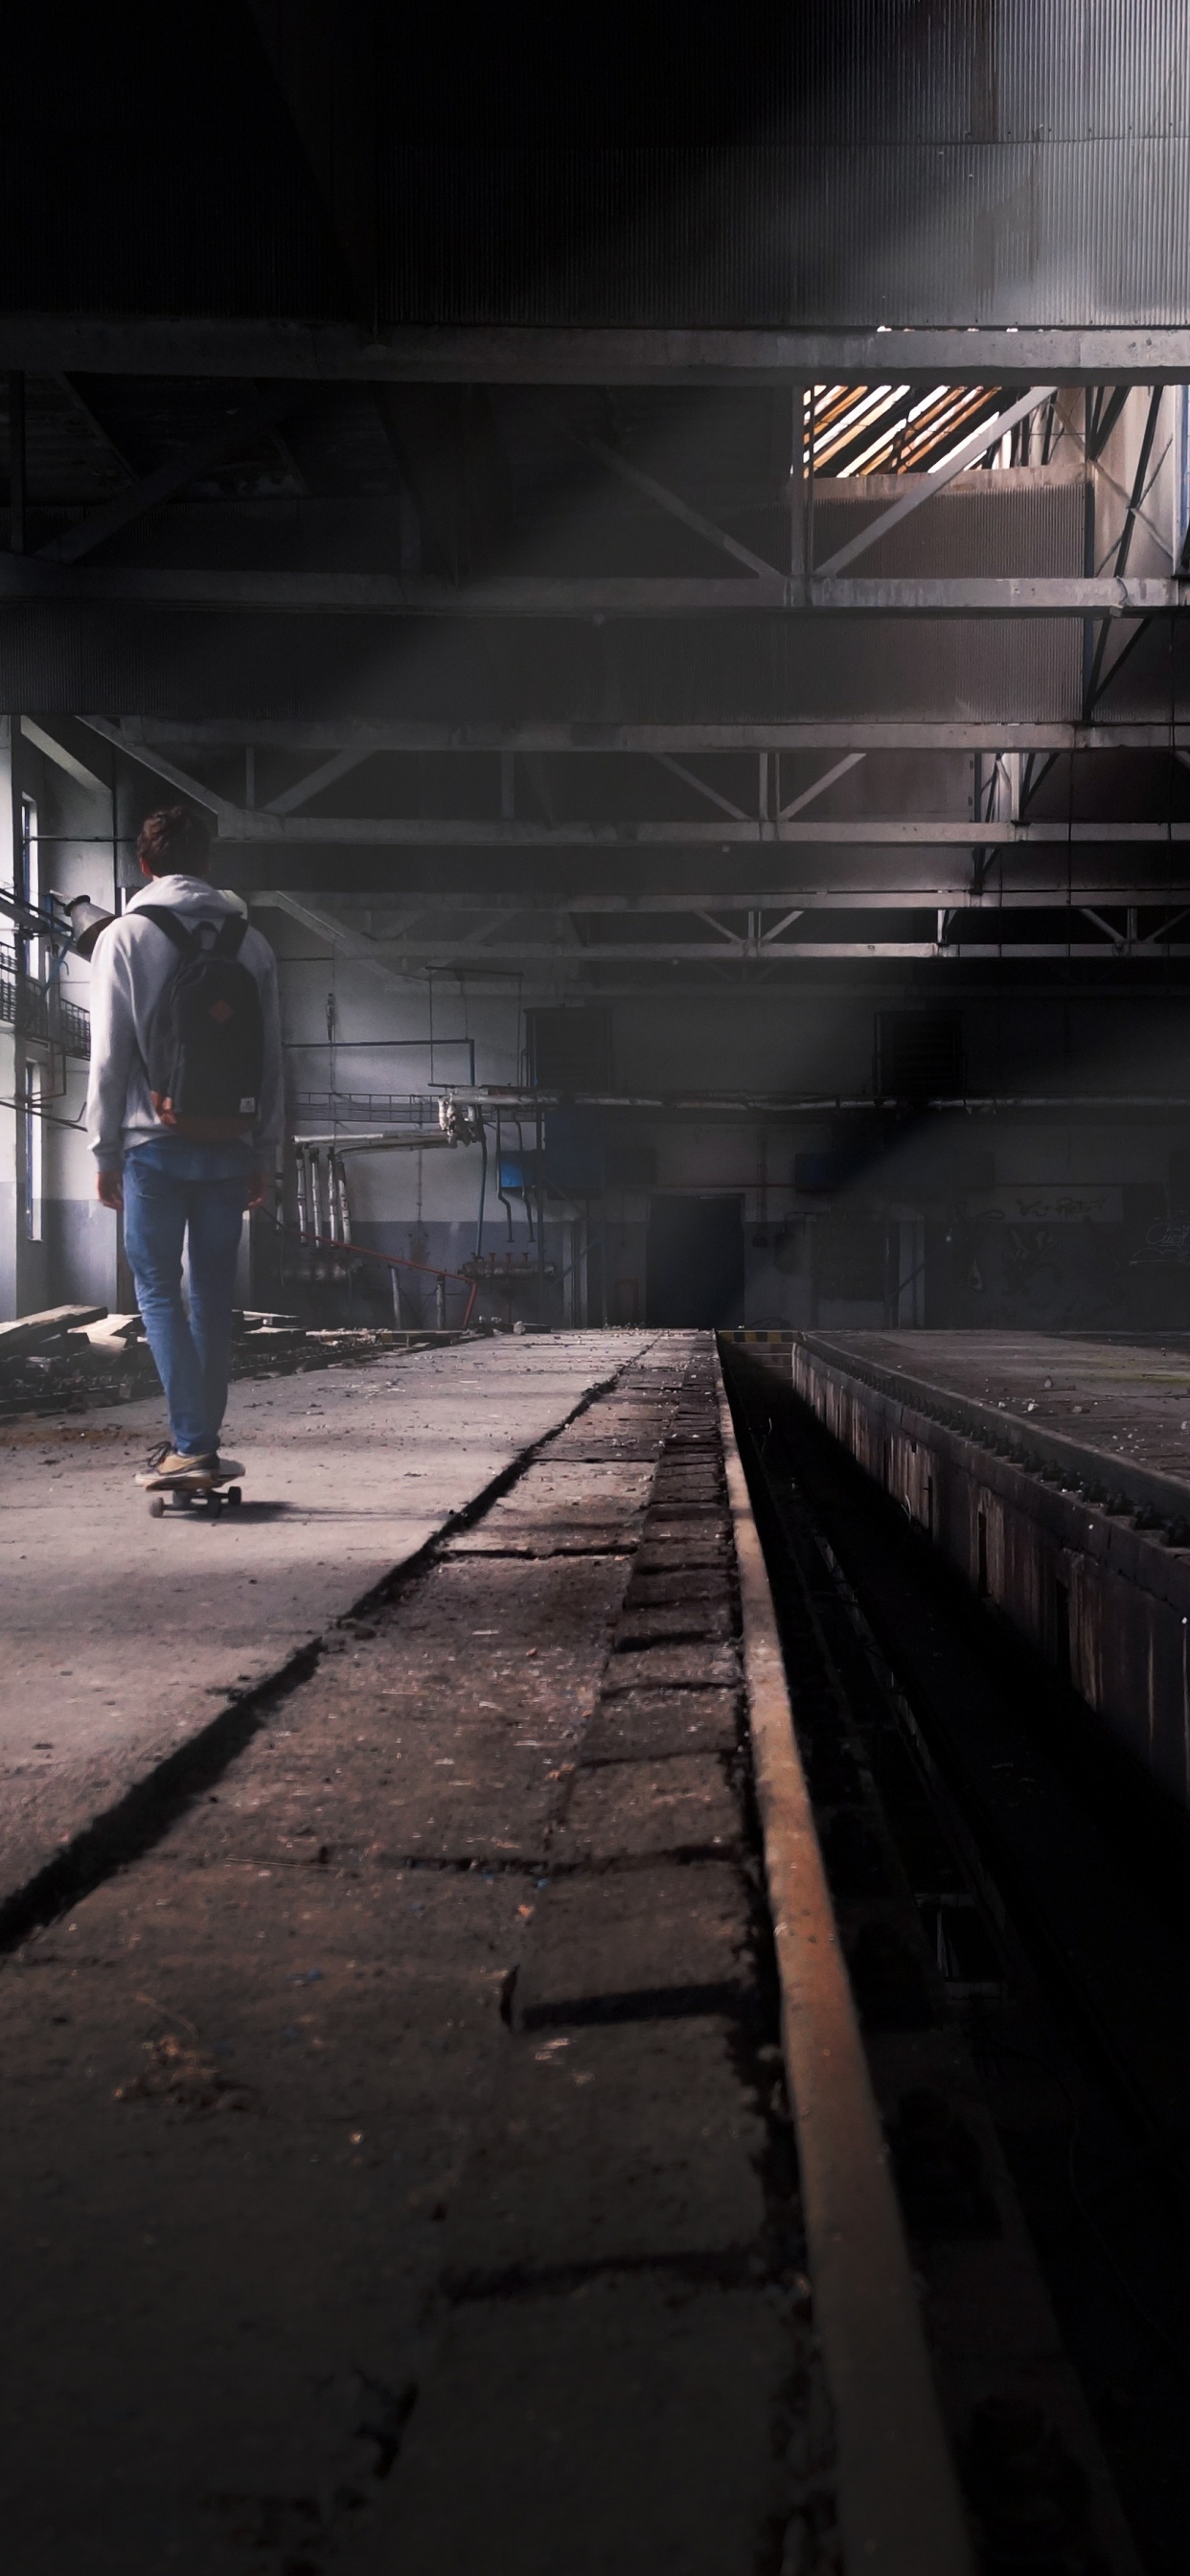 Hombre en Blue Jeans Caminando en la Estación de Tren. Wallpaper in 1242x2688 Resolution